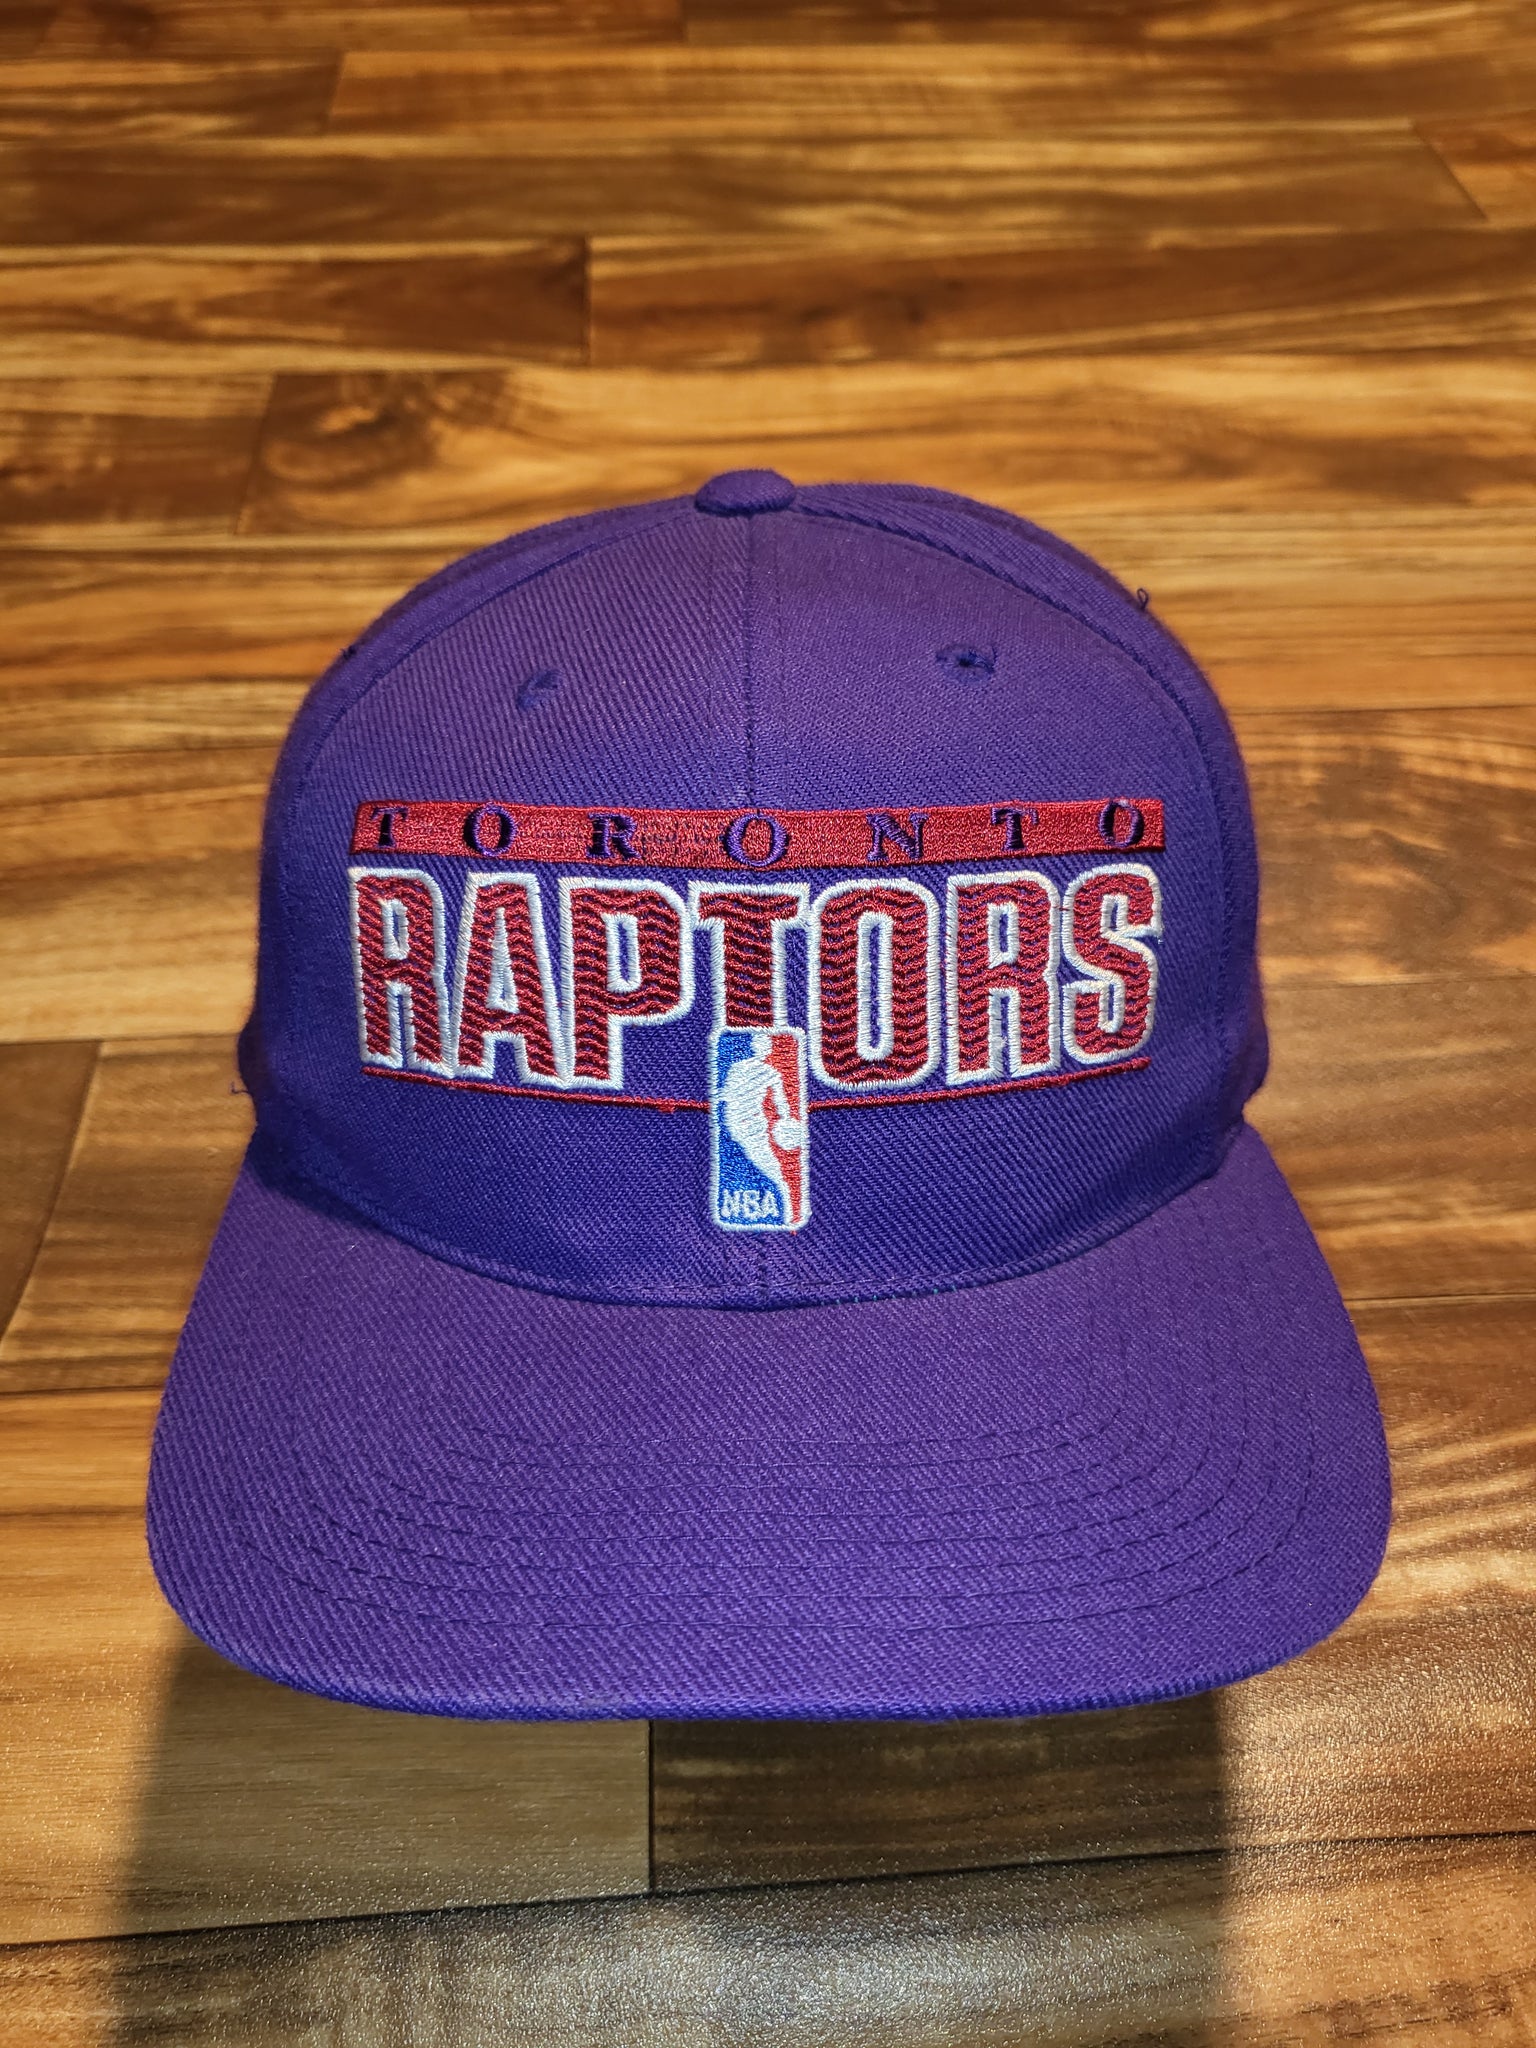 NBA Retro: Toronto Raptors